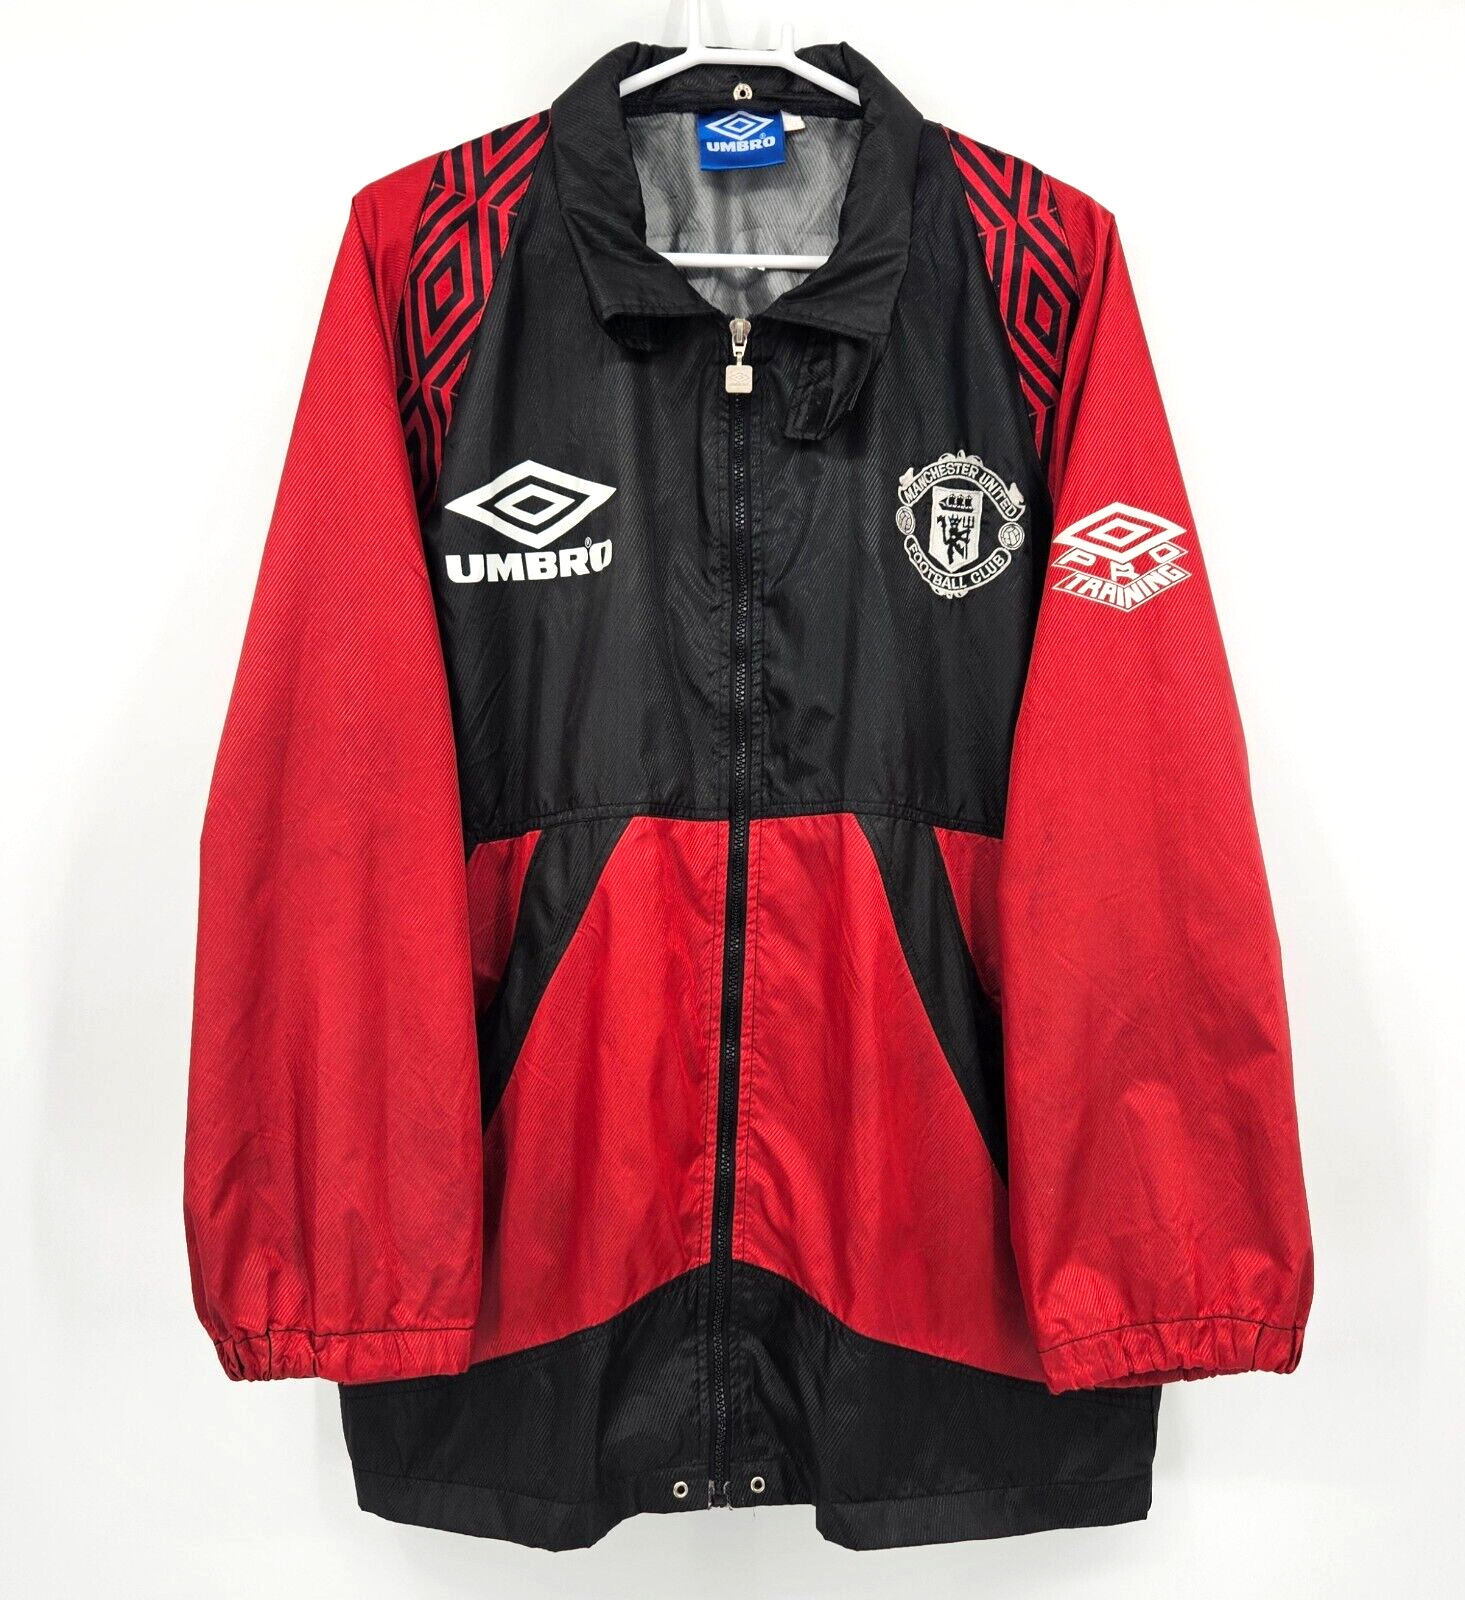 Vintage 1995-96 Manchester United Umbro Pro Training Soccer Jacket Size Medium